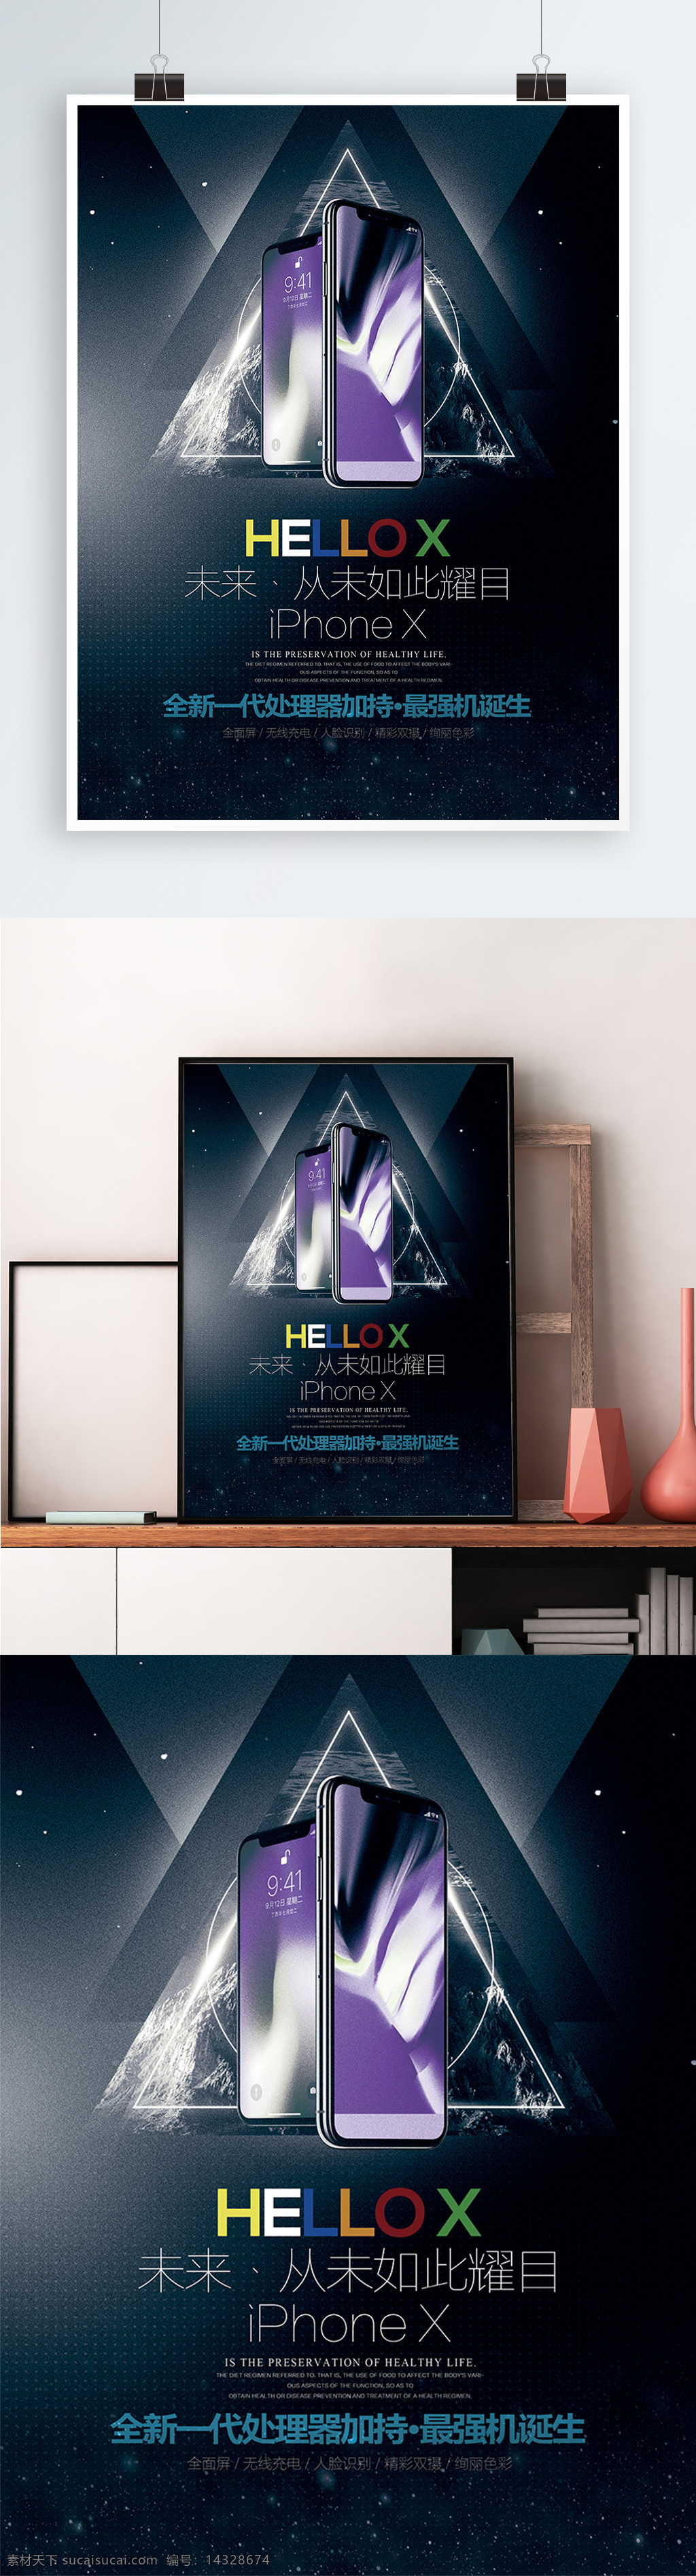 酷 炫 苹果 iphonex 手机 宣传海报 展板 酷炫 智能 科技 简约 时尚 iphone x 宣传 海报